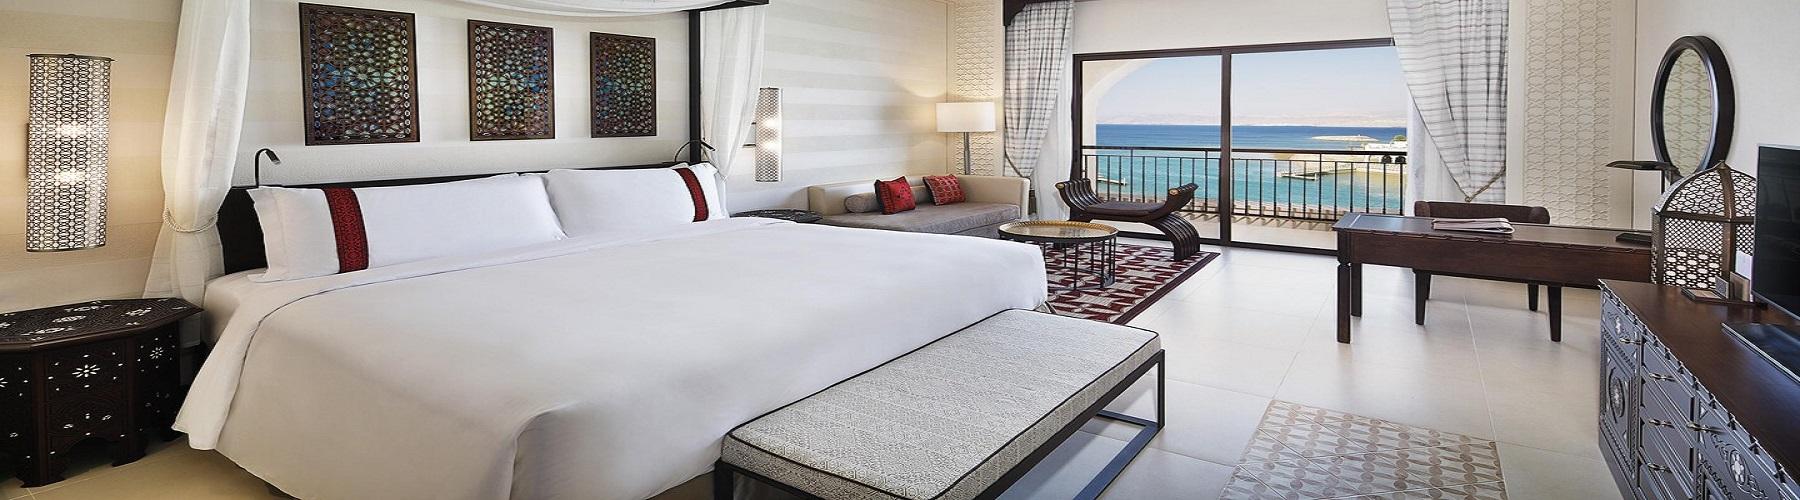 Забронировать отель в Иордании Al Manara, A Luxury Collection Hotel